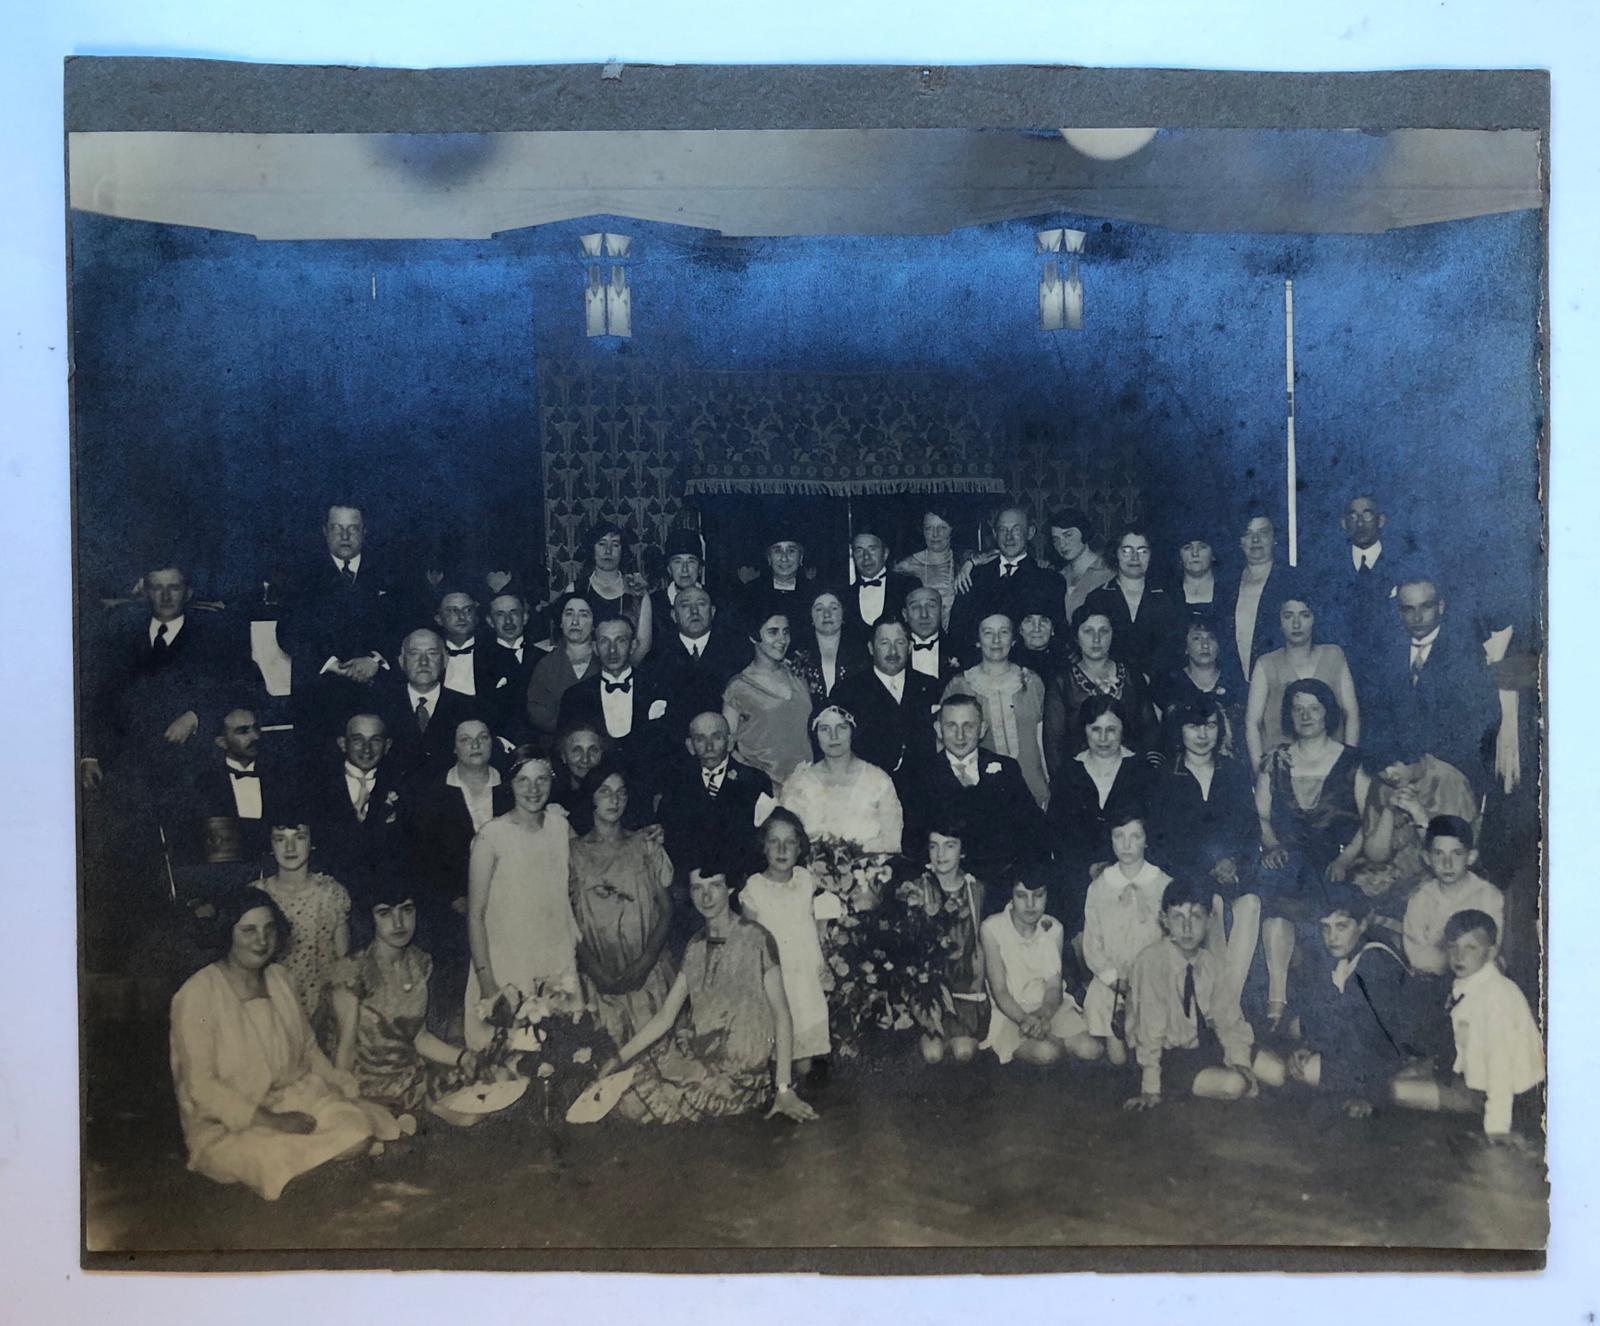  - [PHOTO, POLAK] Groepsfoto van het huwelijk van G. Polak met M. Polak, ca. 1920? 18x24 cm.